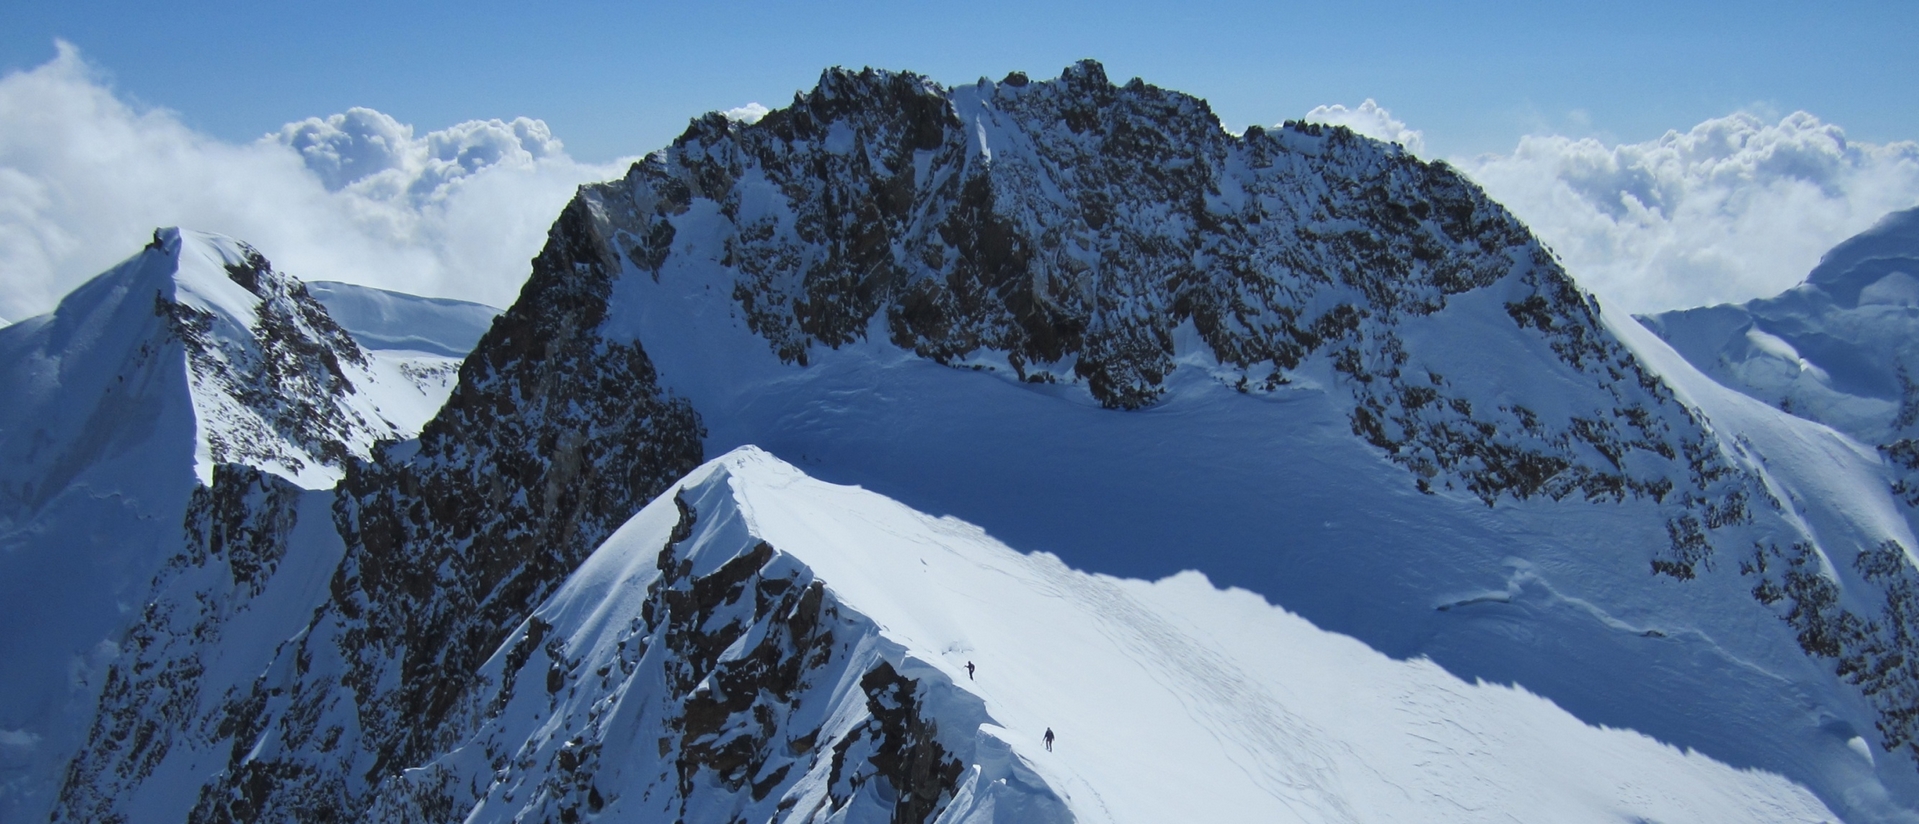 La Pointe Dufour à 4'634 mètres est le  plus haut sommet de Suisse |  wikimedia commons  Camptocamp.org CC BY-SA 3.0